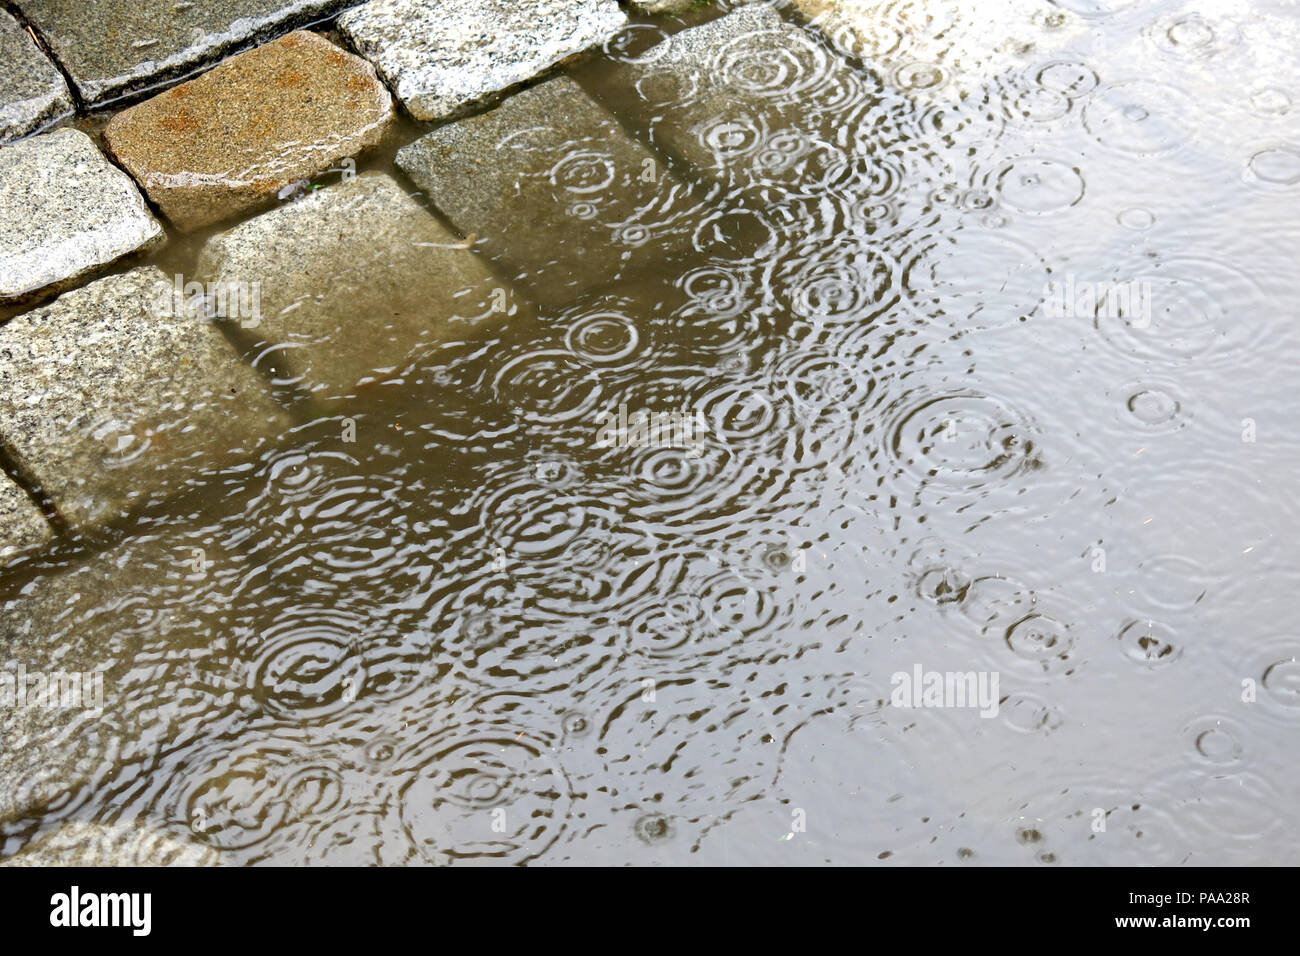 Regen in der Stadt - Pfützen auf der Straße mit Kopfsteinpflaster Pflaster  - Wasser Tropfen regen Stockfotografie - Alamy